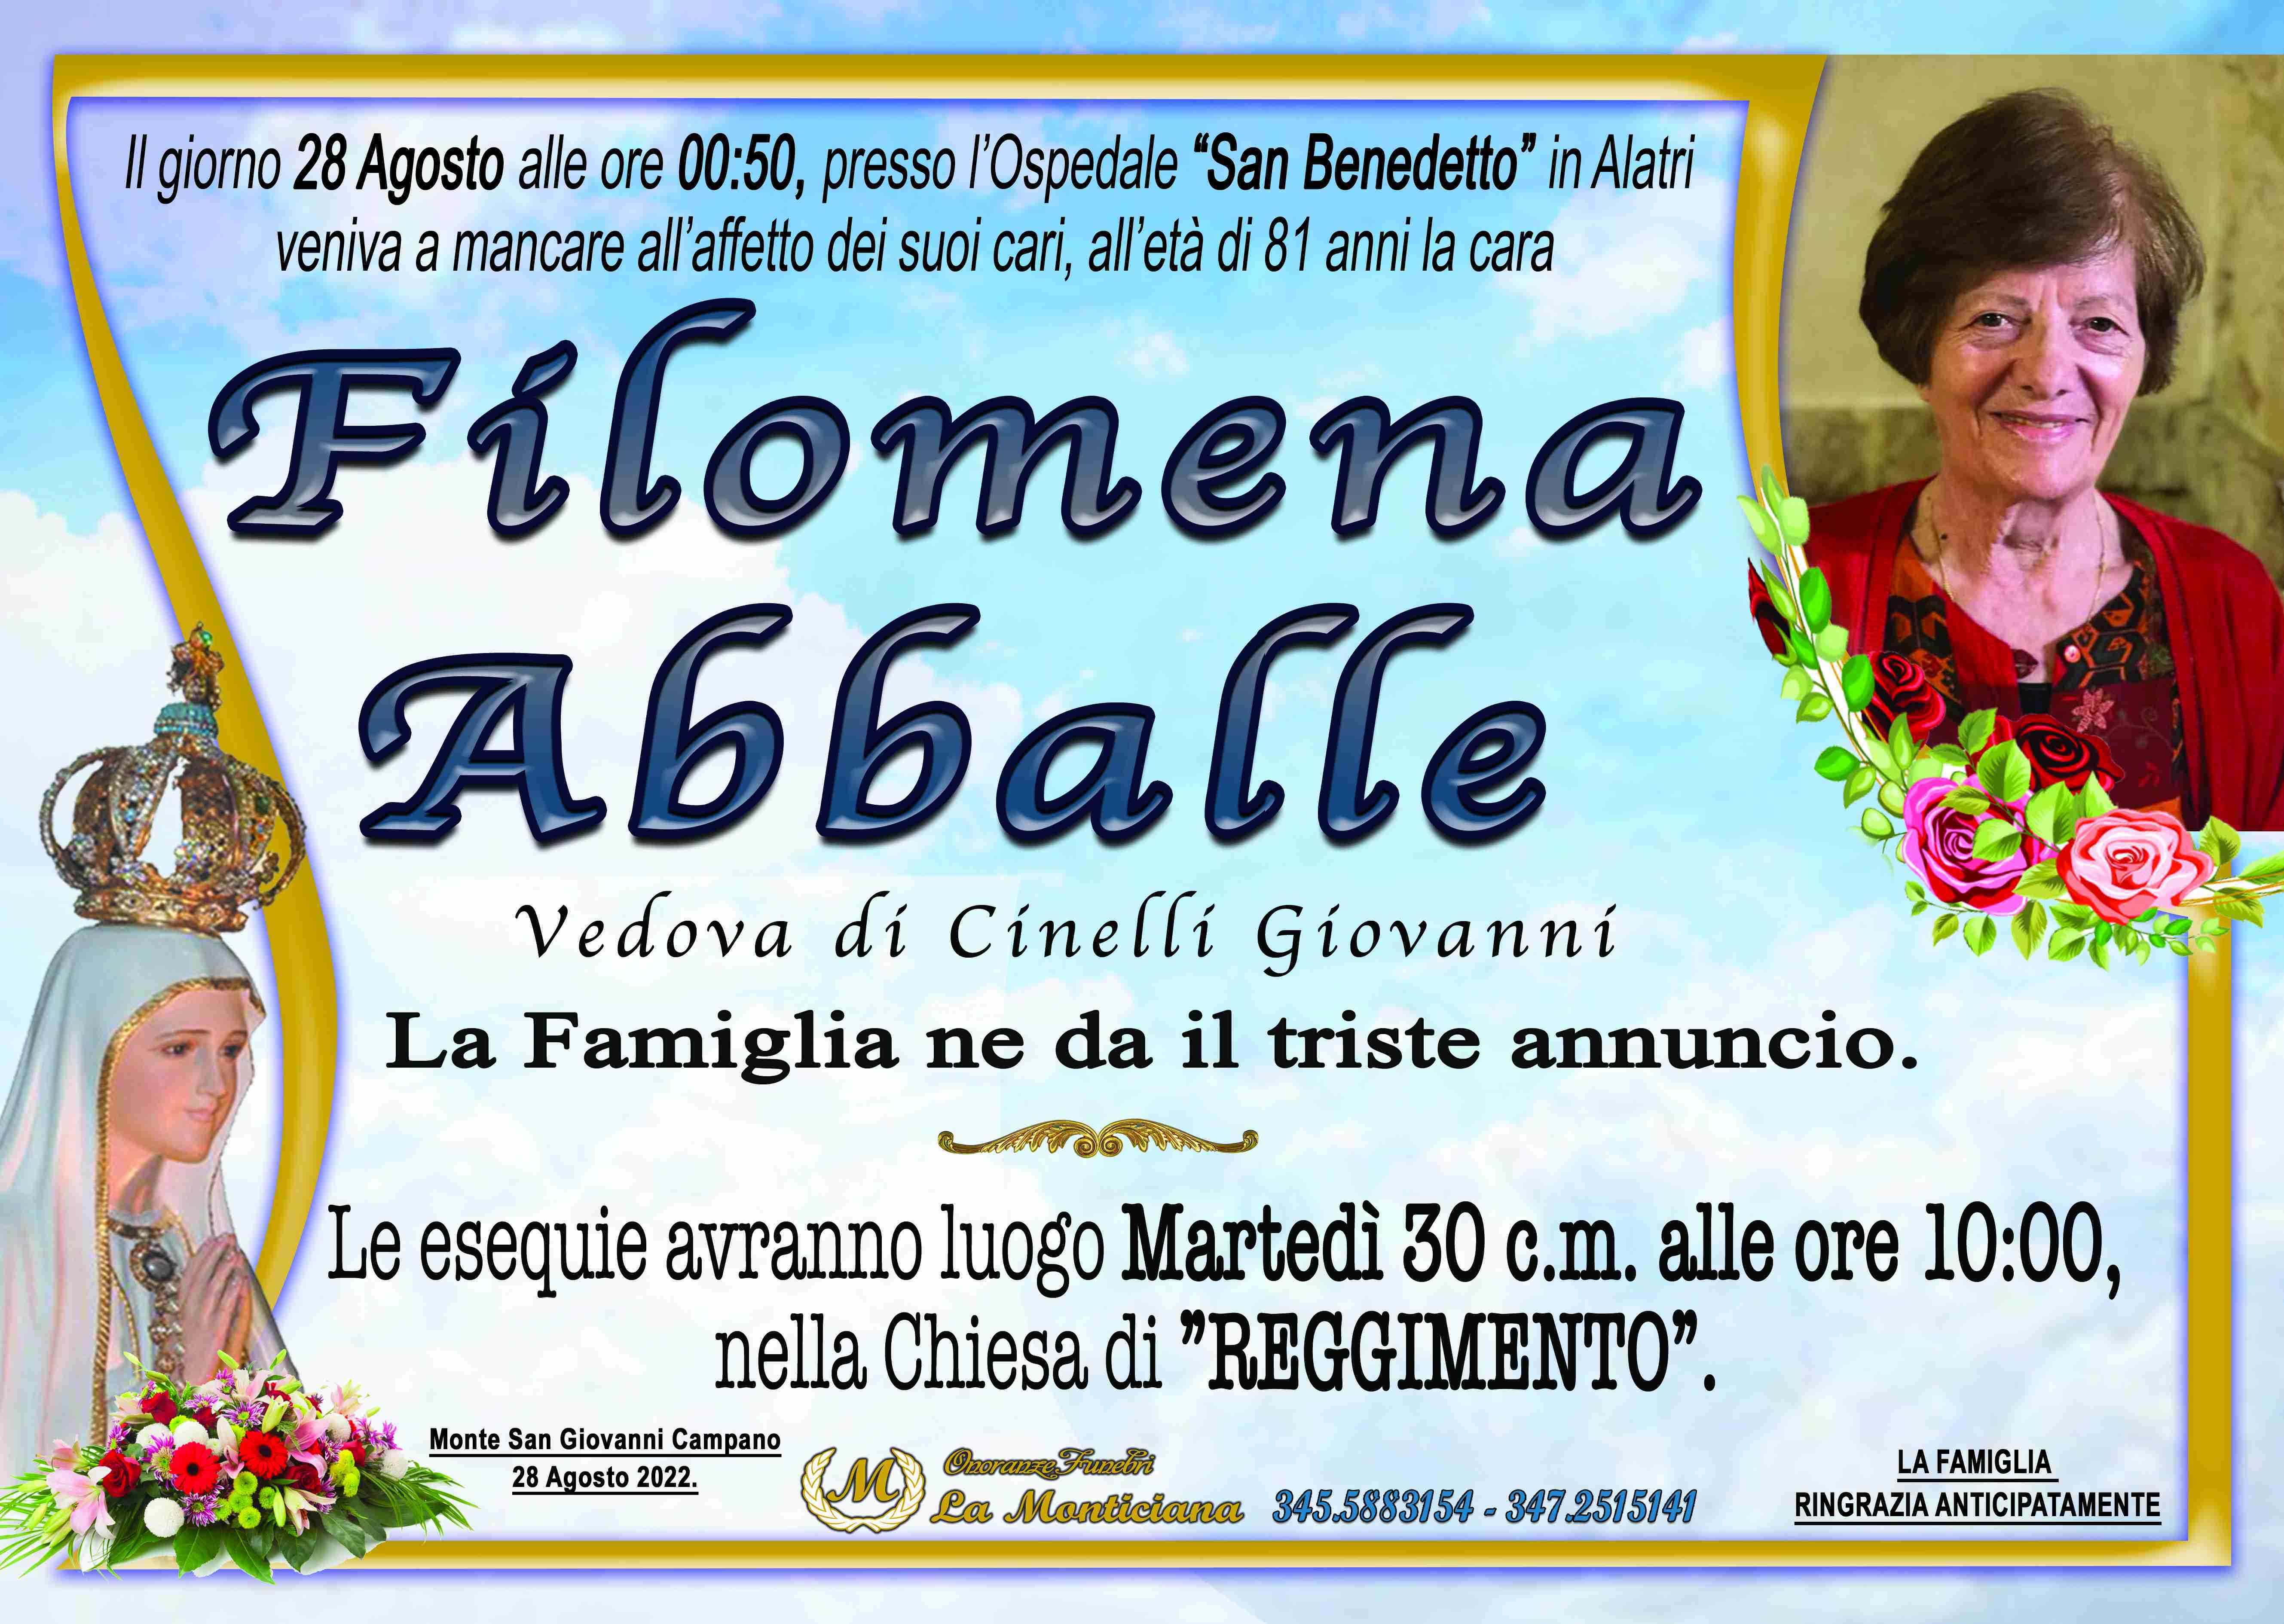 Filomena Abballe